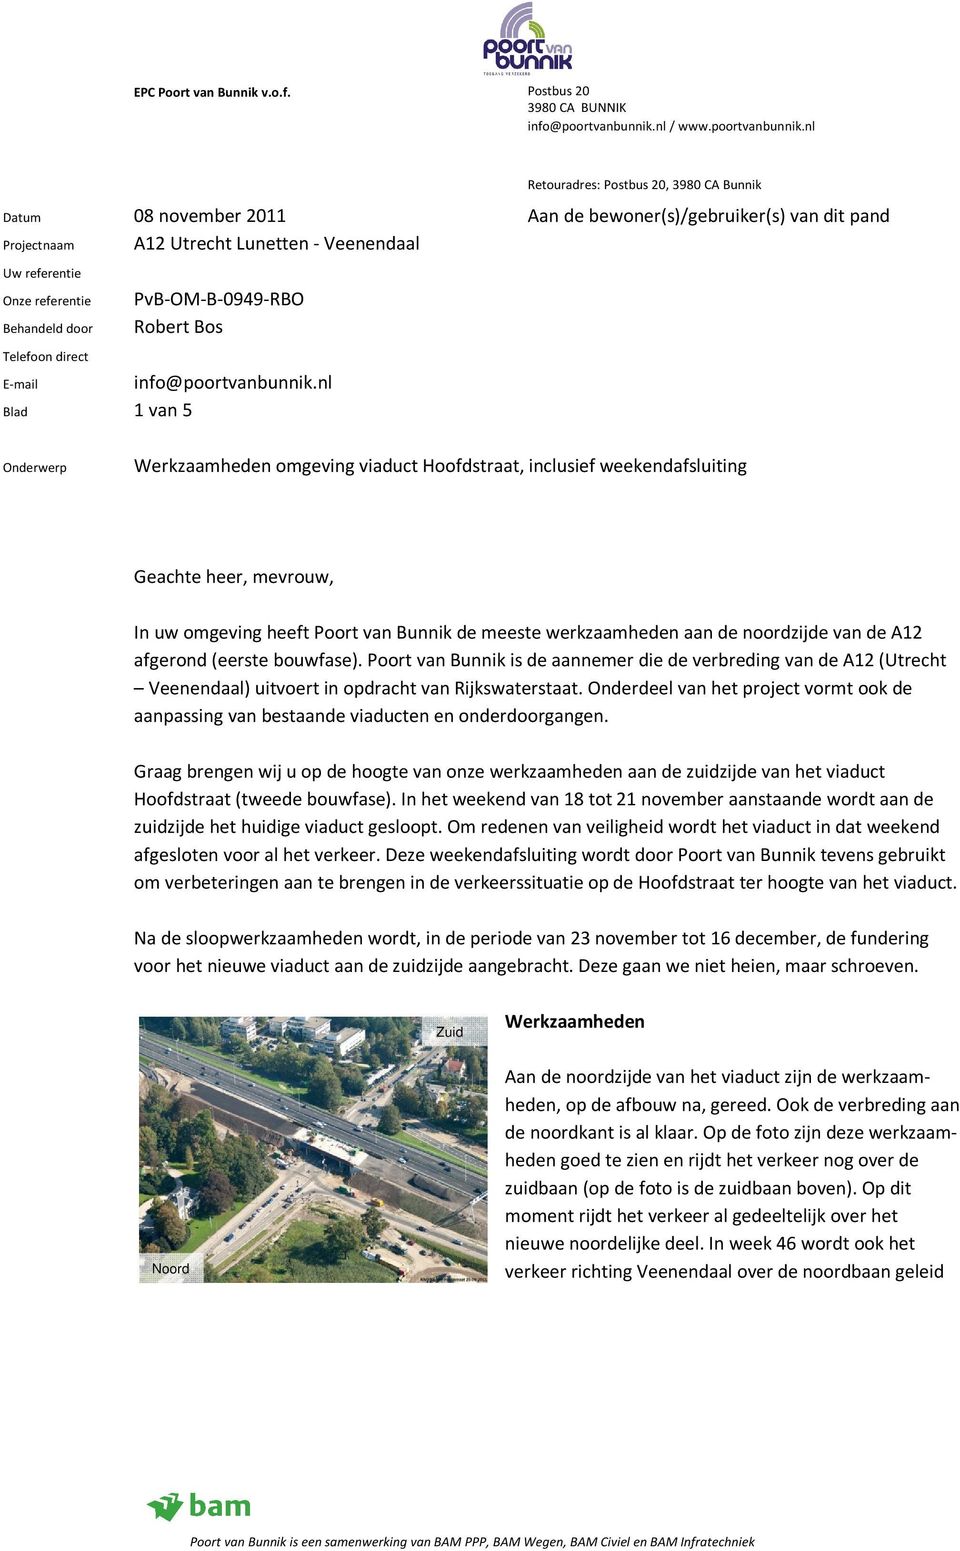 nl Blad 1 van 5 Onderwerp Werkzaamheden omgeving viaduct Hoofdstraat, inclusief weekendafsluiting Geachte heer, mevrouw, In uw omgeving heeft Poort van Bunnik de meeste werkzaamheden aan de